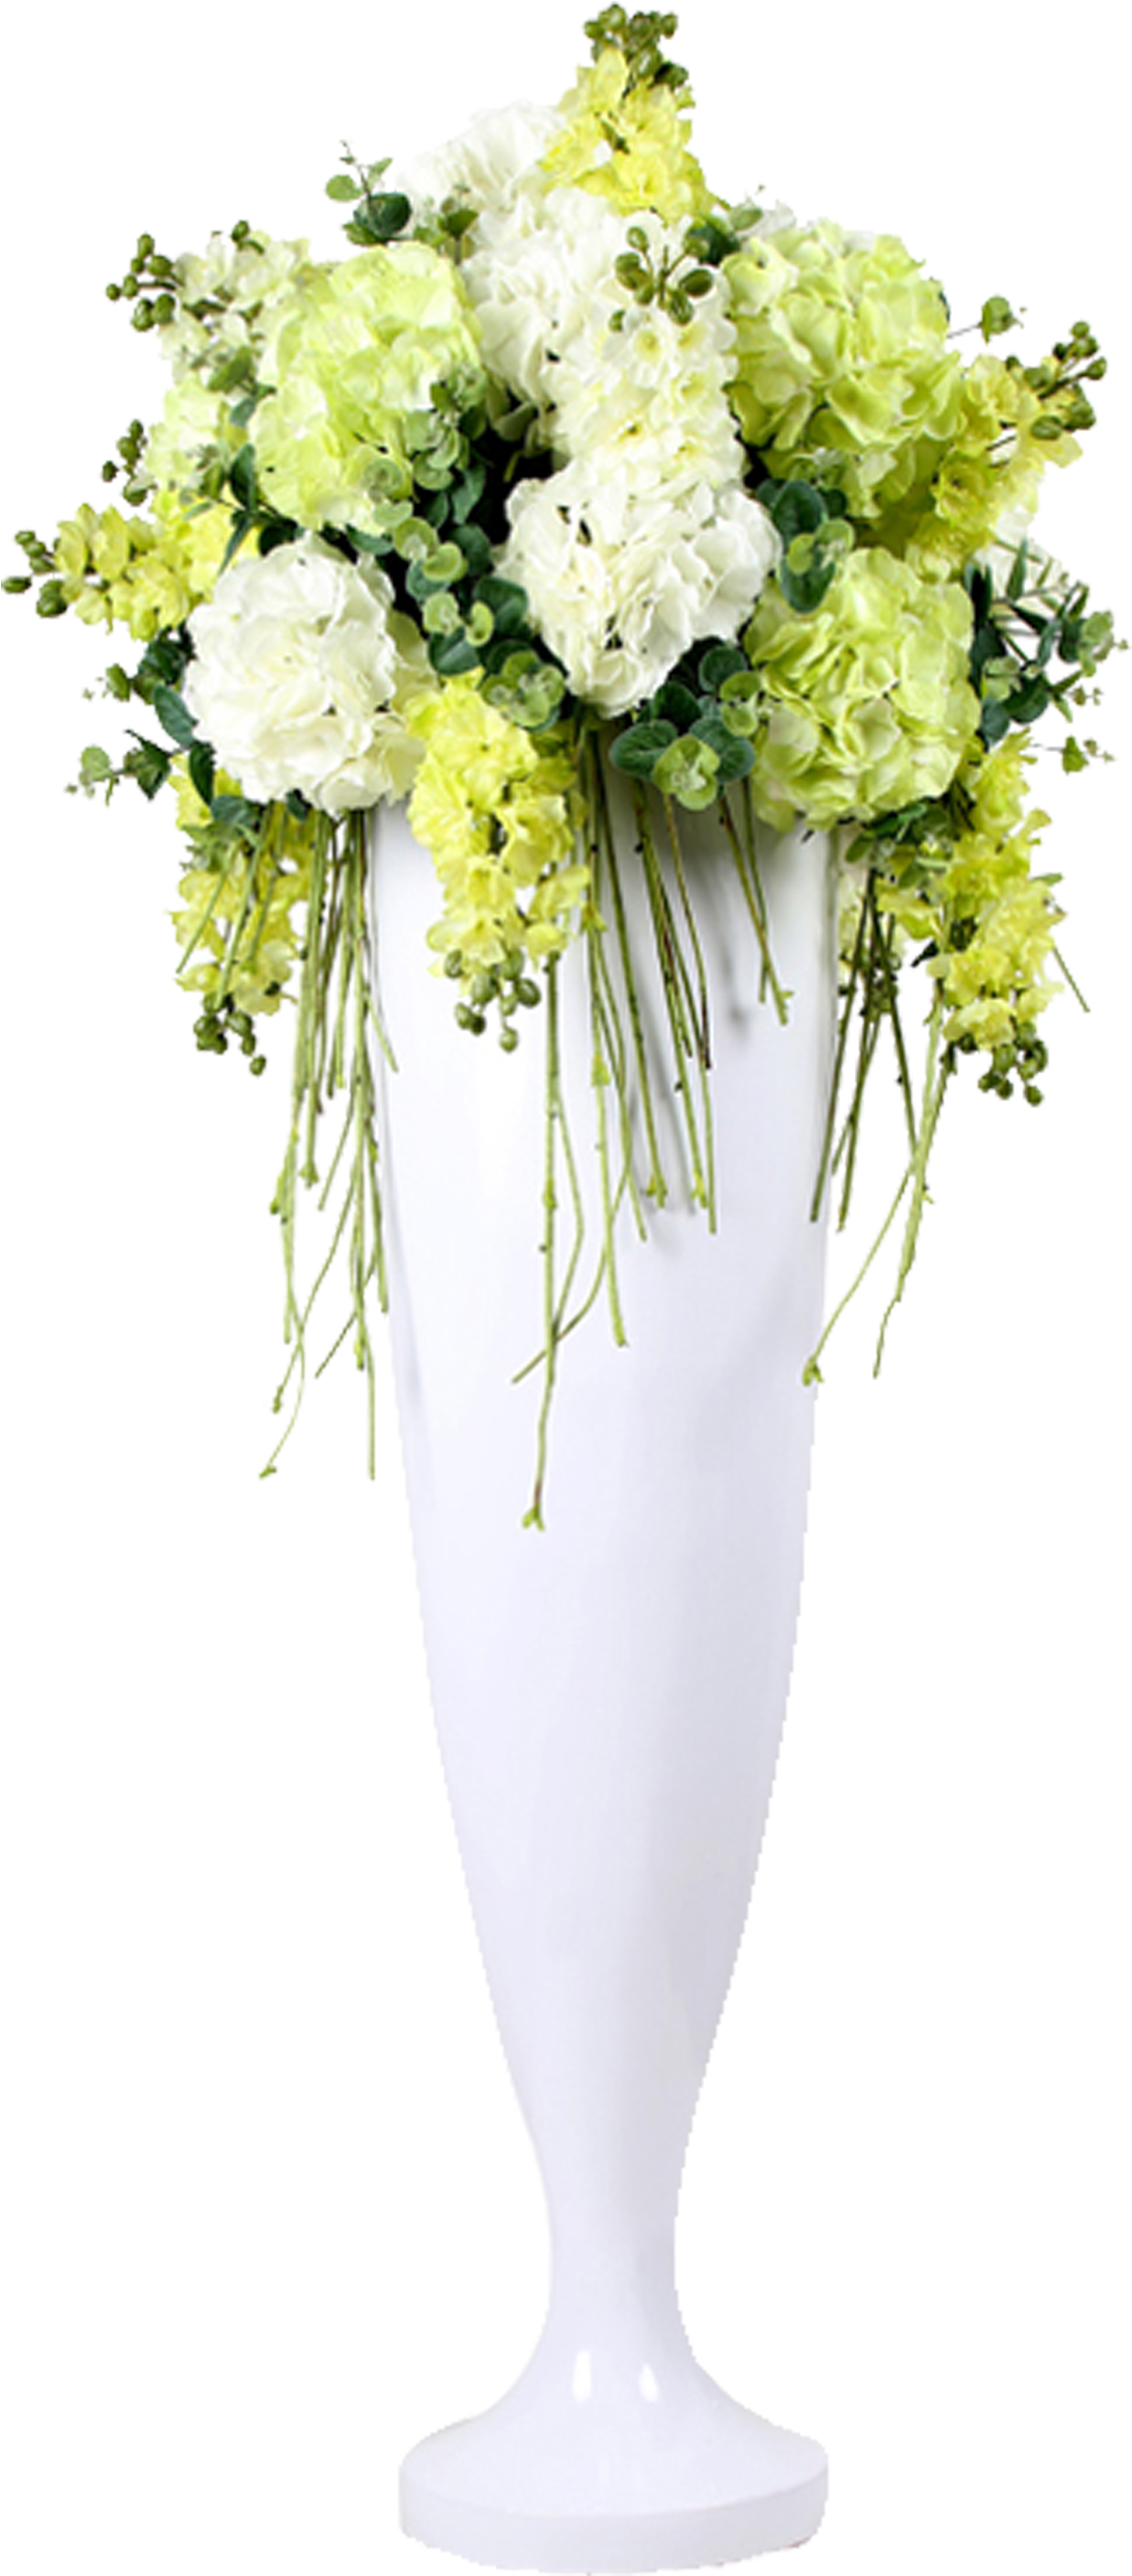 Floral Design Vase Wedding Flower Bouquet - Wedding Flower Vase Png Clipart (1237x2815), Png Download